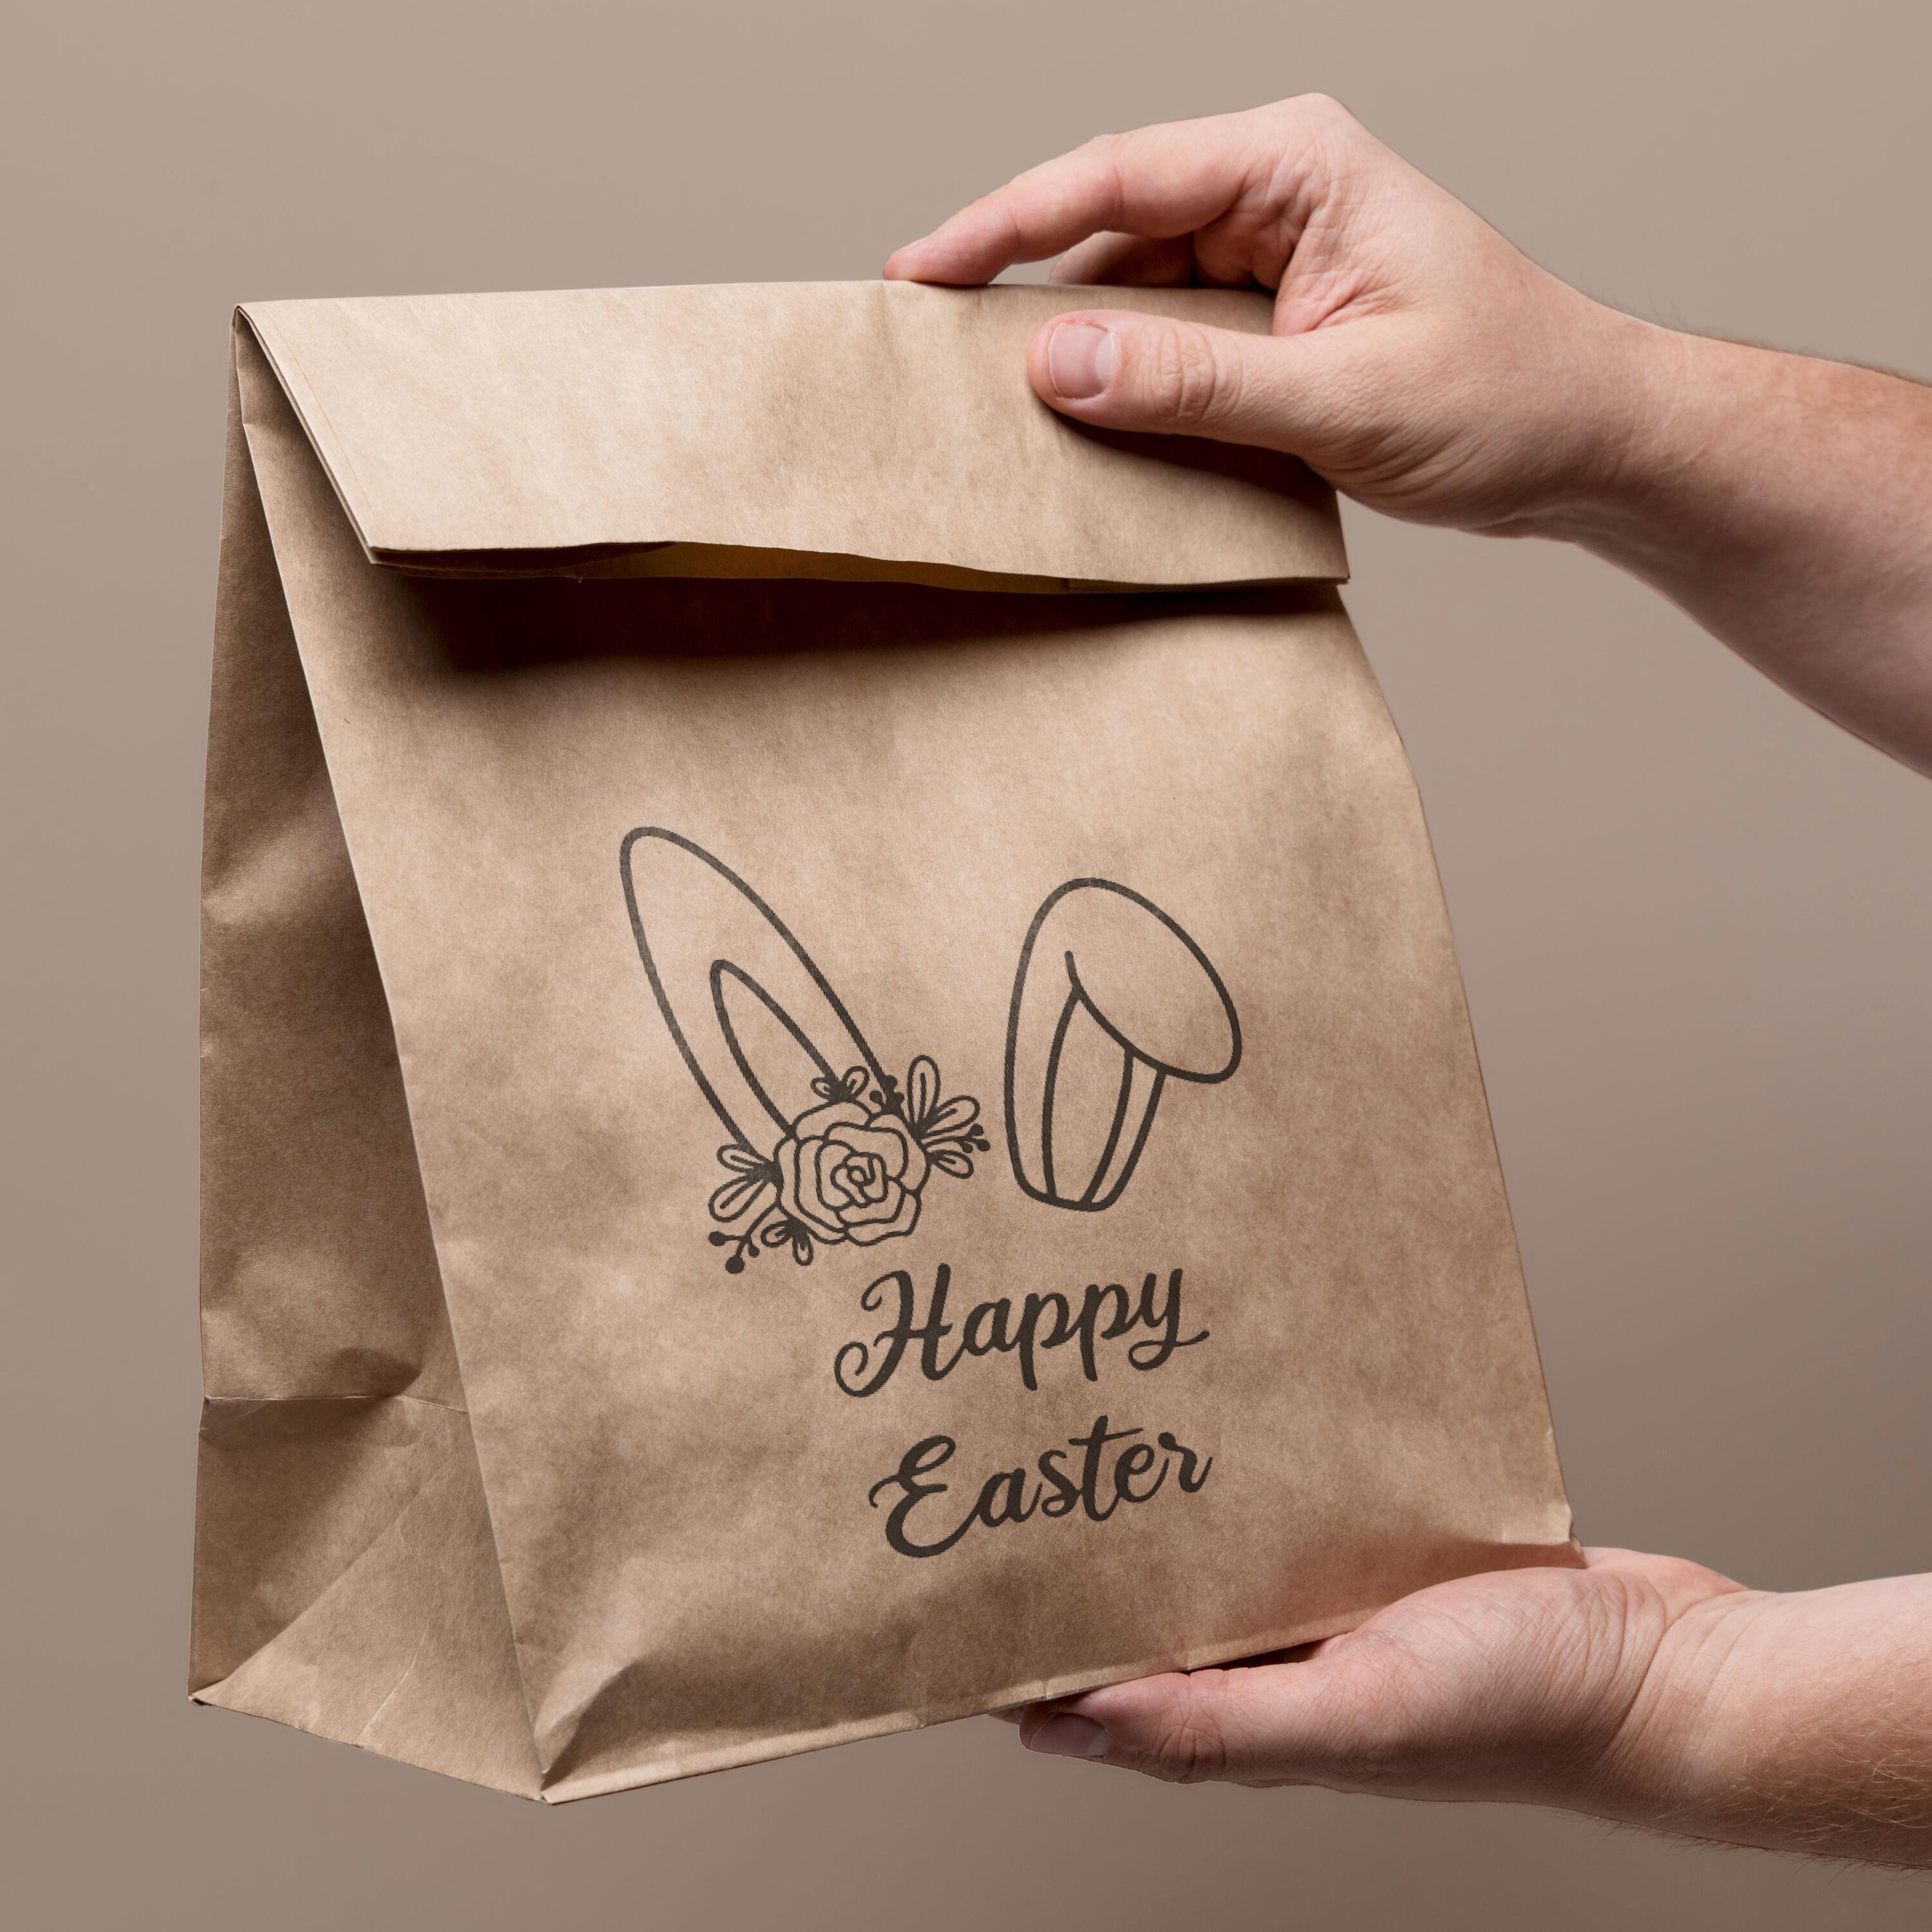 Happy easter design | Bunny ears| SVG - beige paper bag.